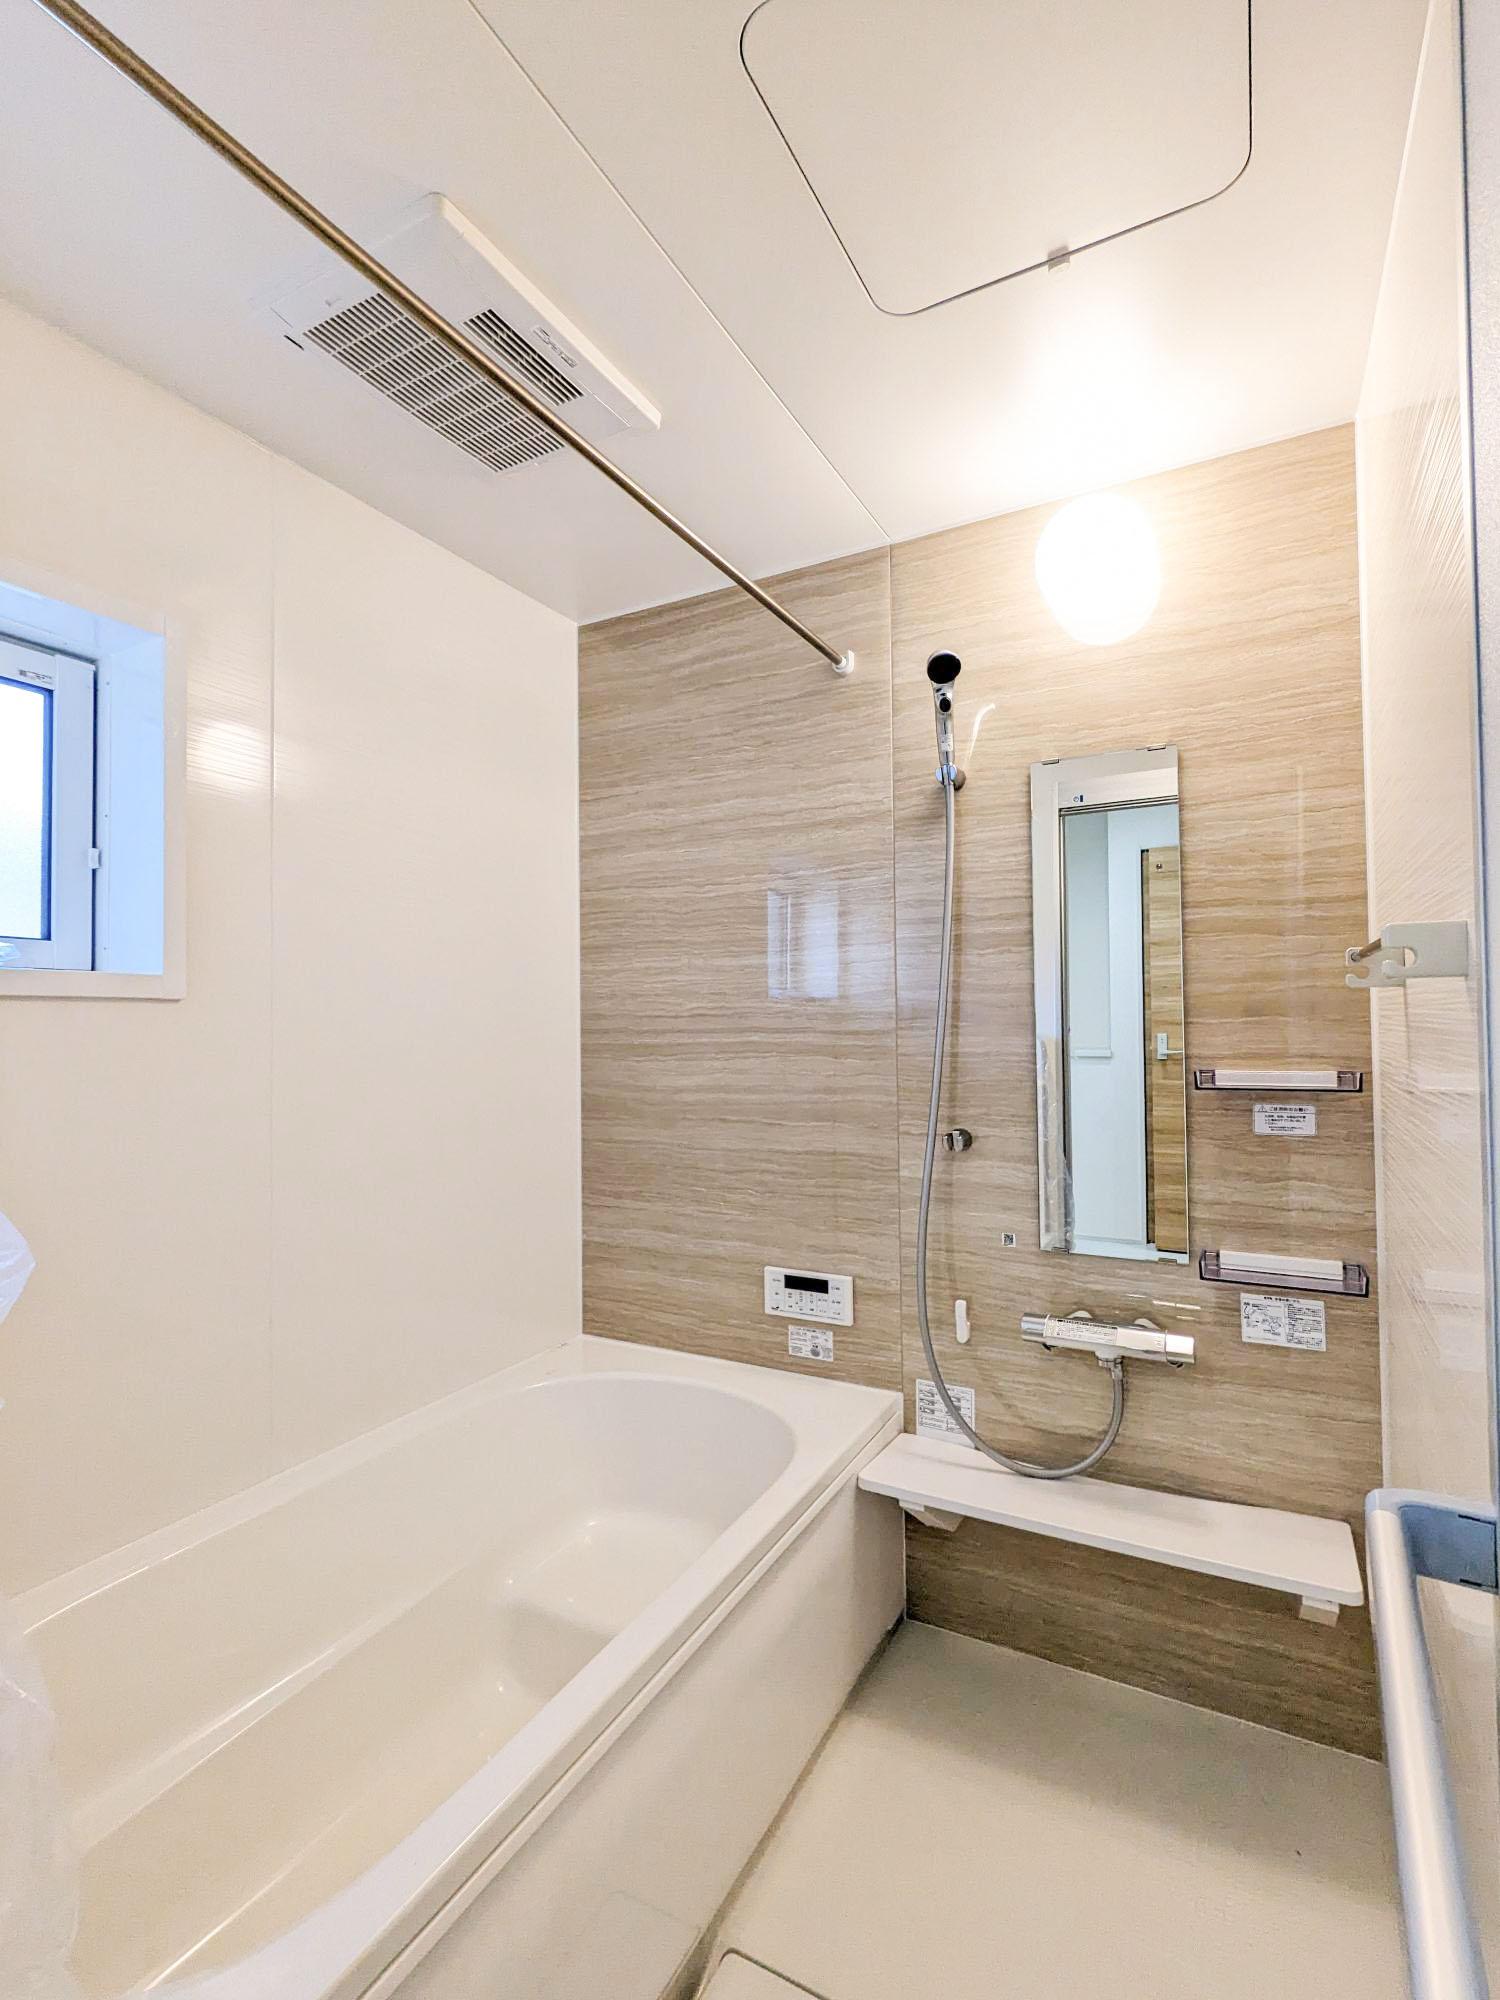 【2号棟】　アクセントクロス採用した浴室はオシャレで、一日の疲れが癒される空間に。高断熱浴槽を採用し、4時間たっても湯温低下は2.5℃以下なので光熱費の節約にもなります。